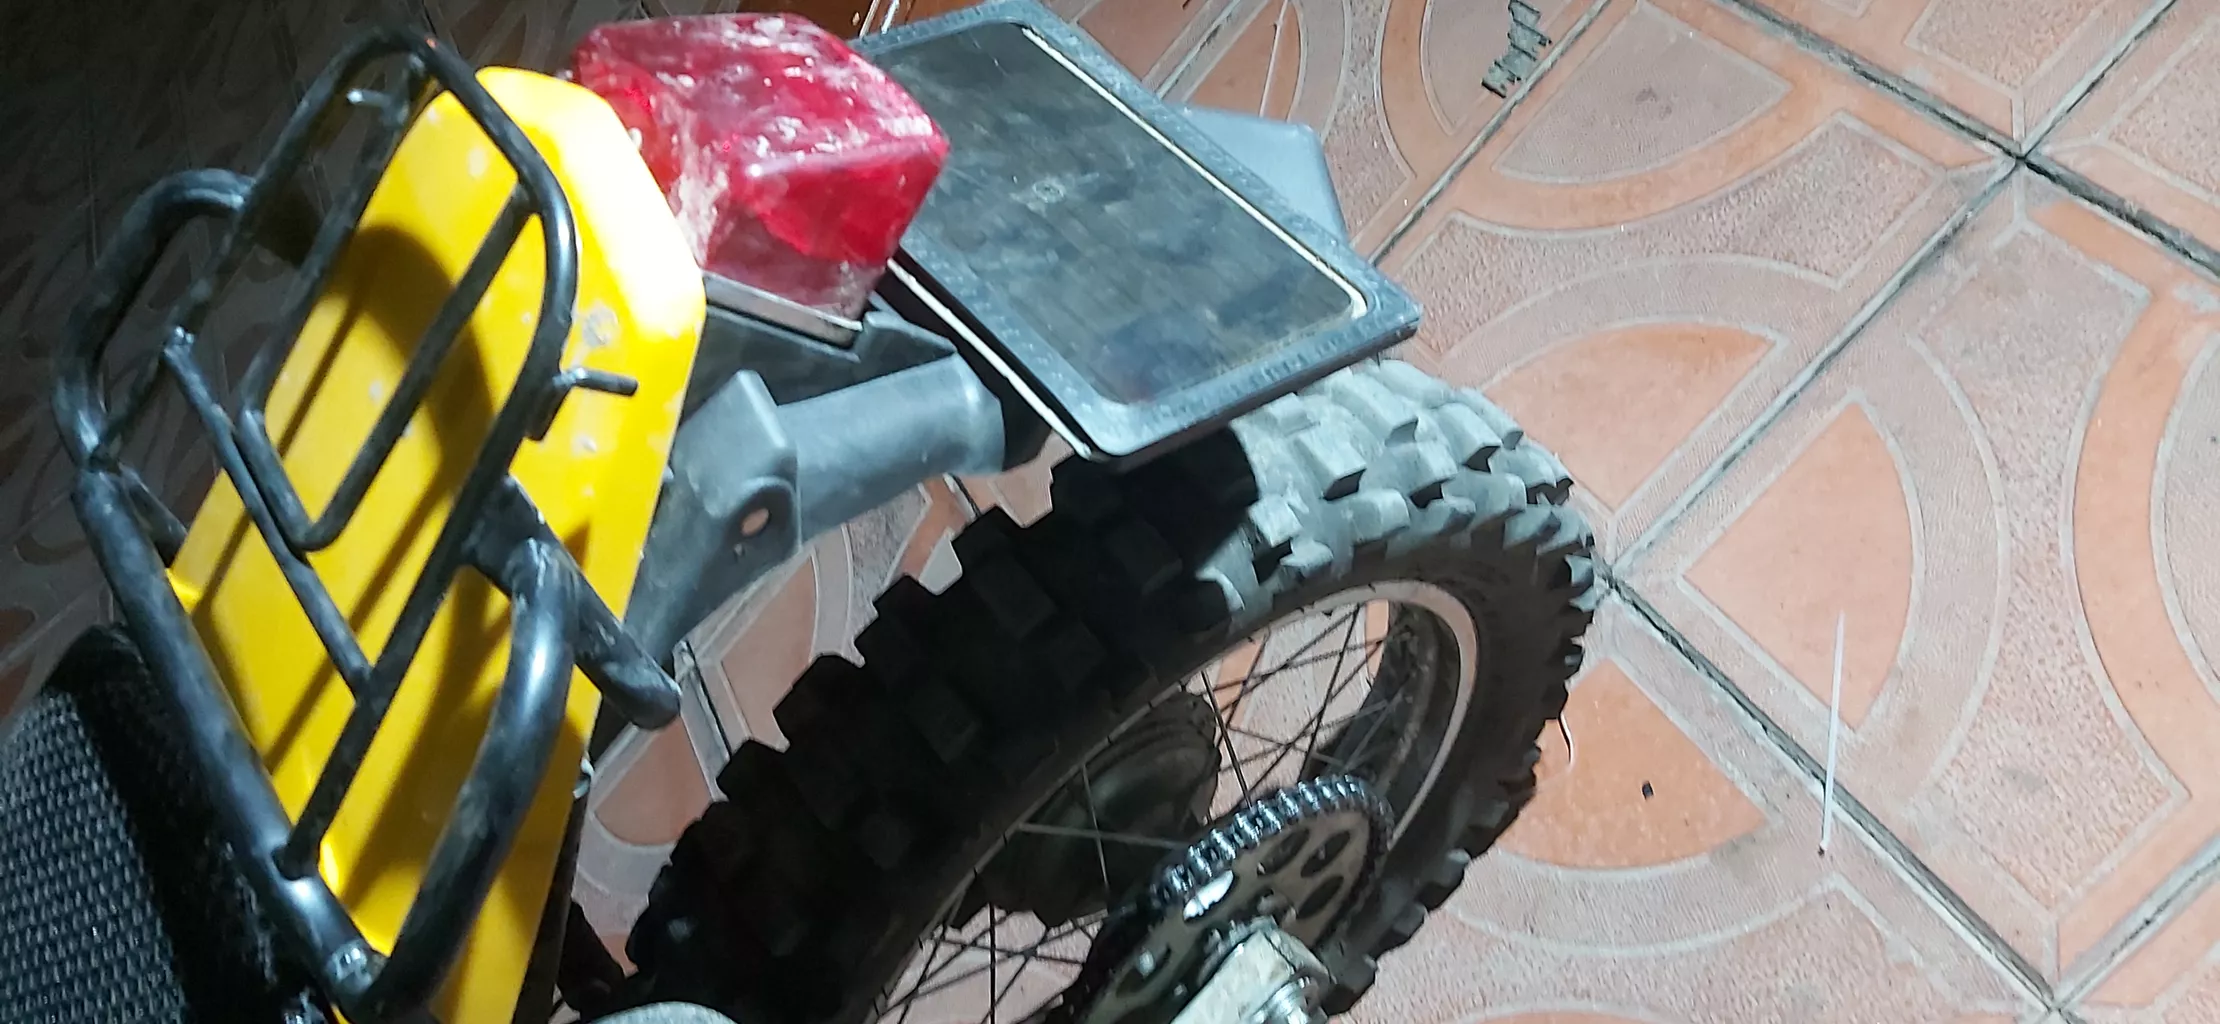 دم گلگیر موتور سیکلت مدل kw21 مناسب برای تریل روان